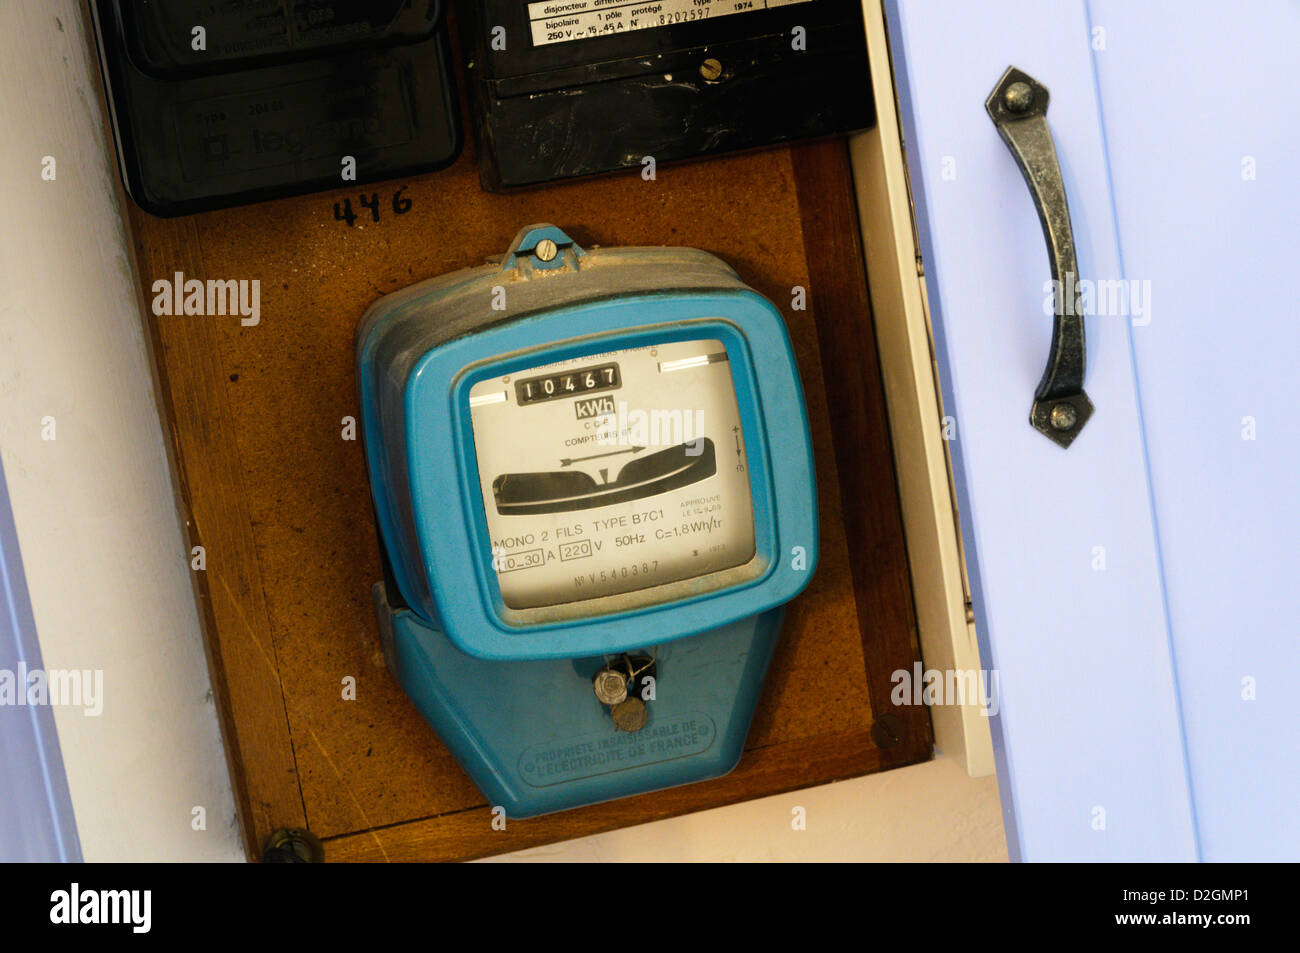 Un compteur d'électricité domestique dans un placard Banque D'Images